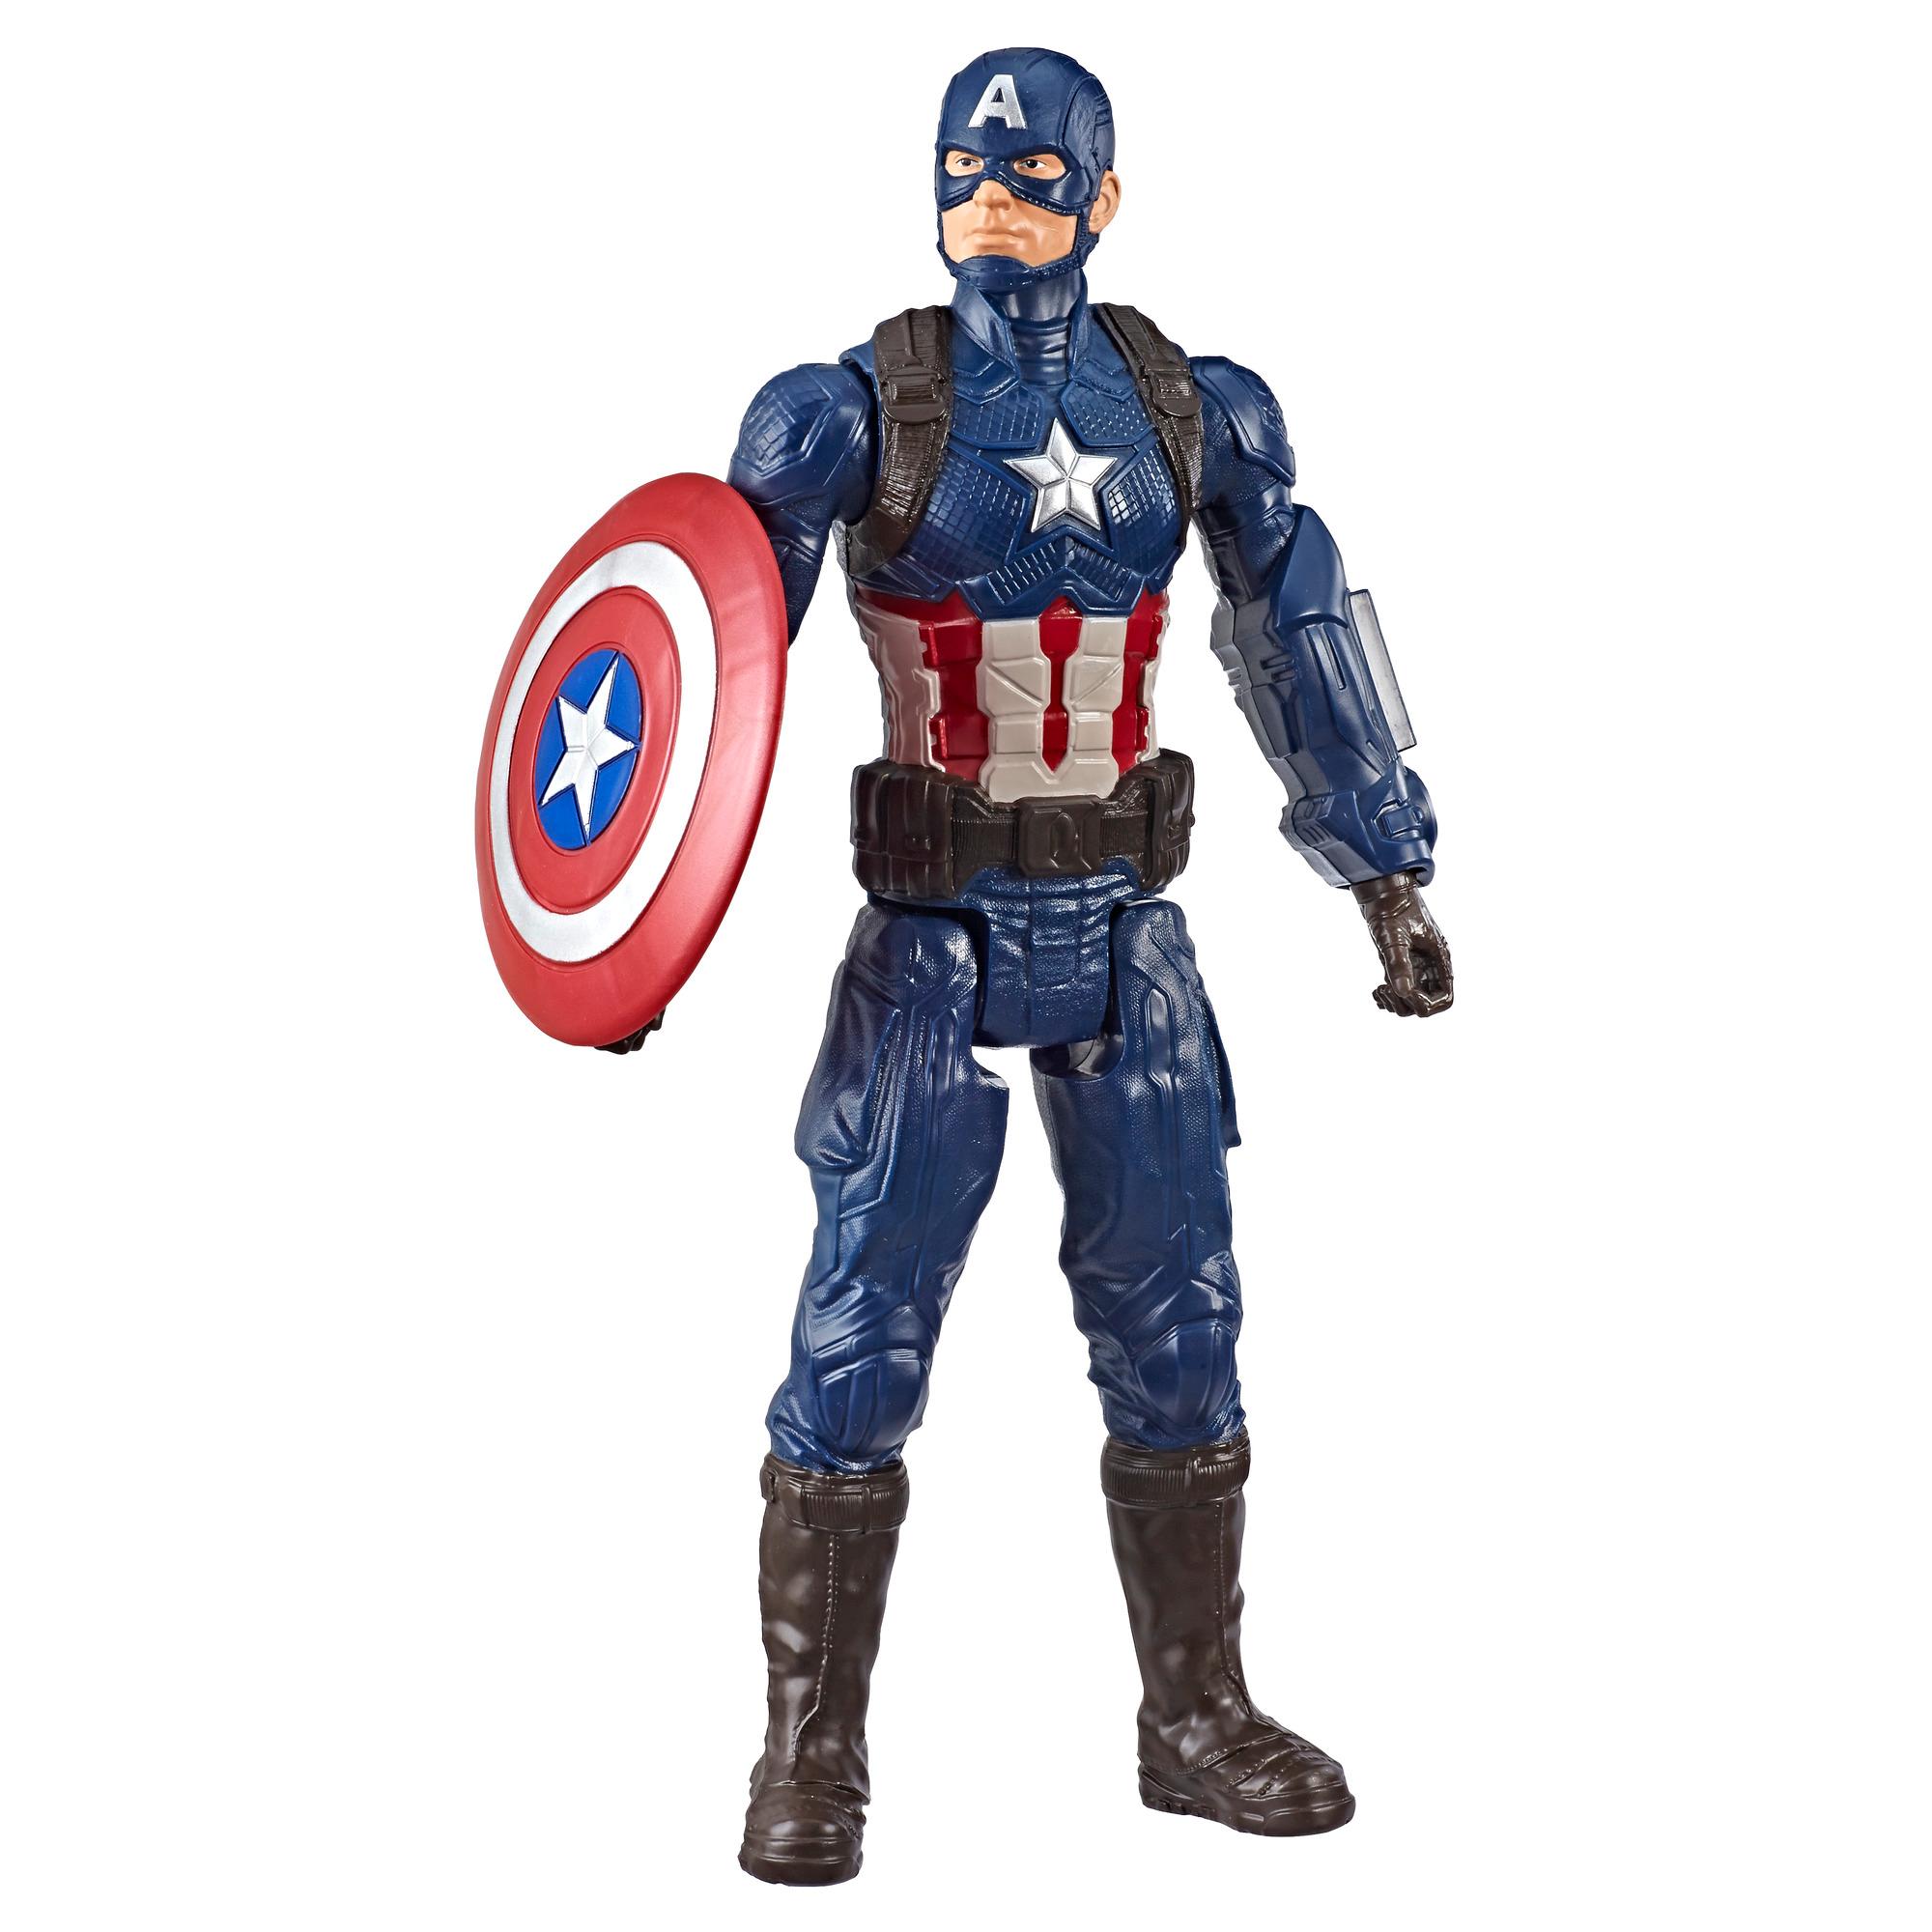 Marvel Avengers: Endgame Titan Hero Series Captain America 12-Inch Action Figure